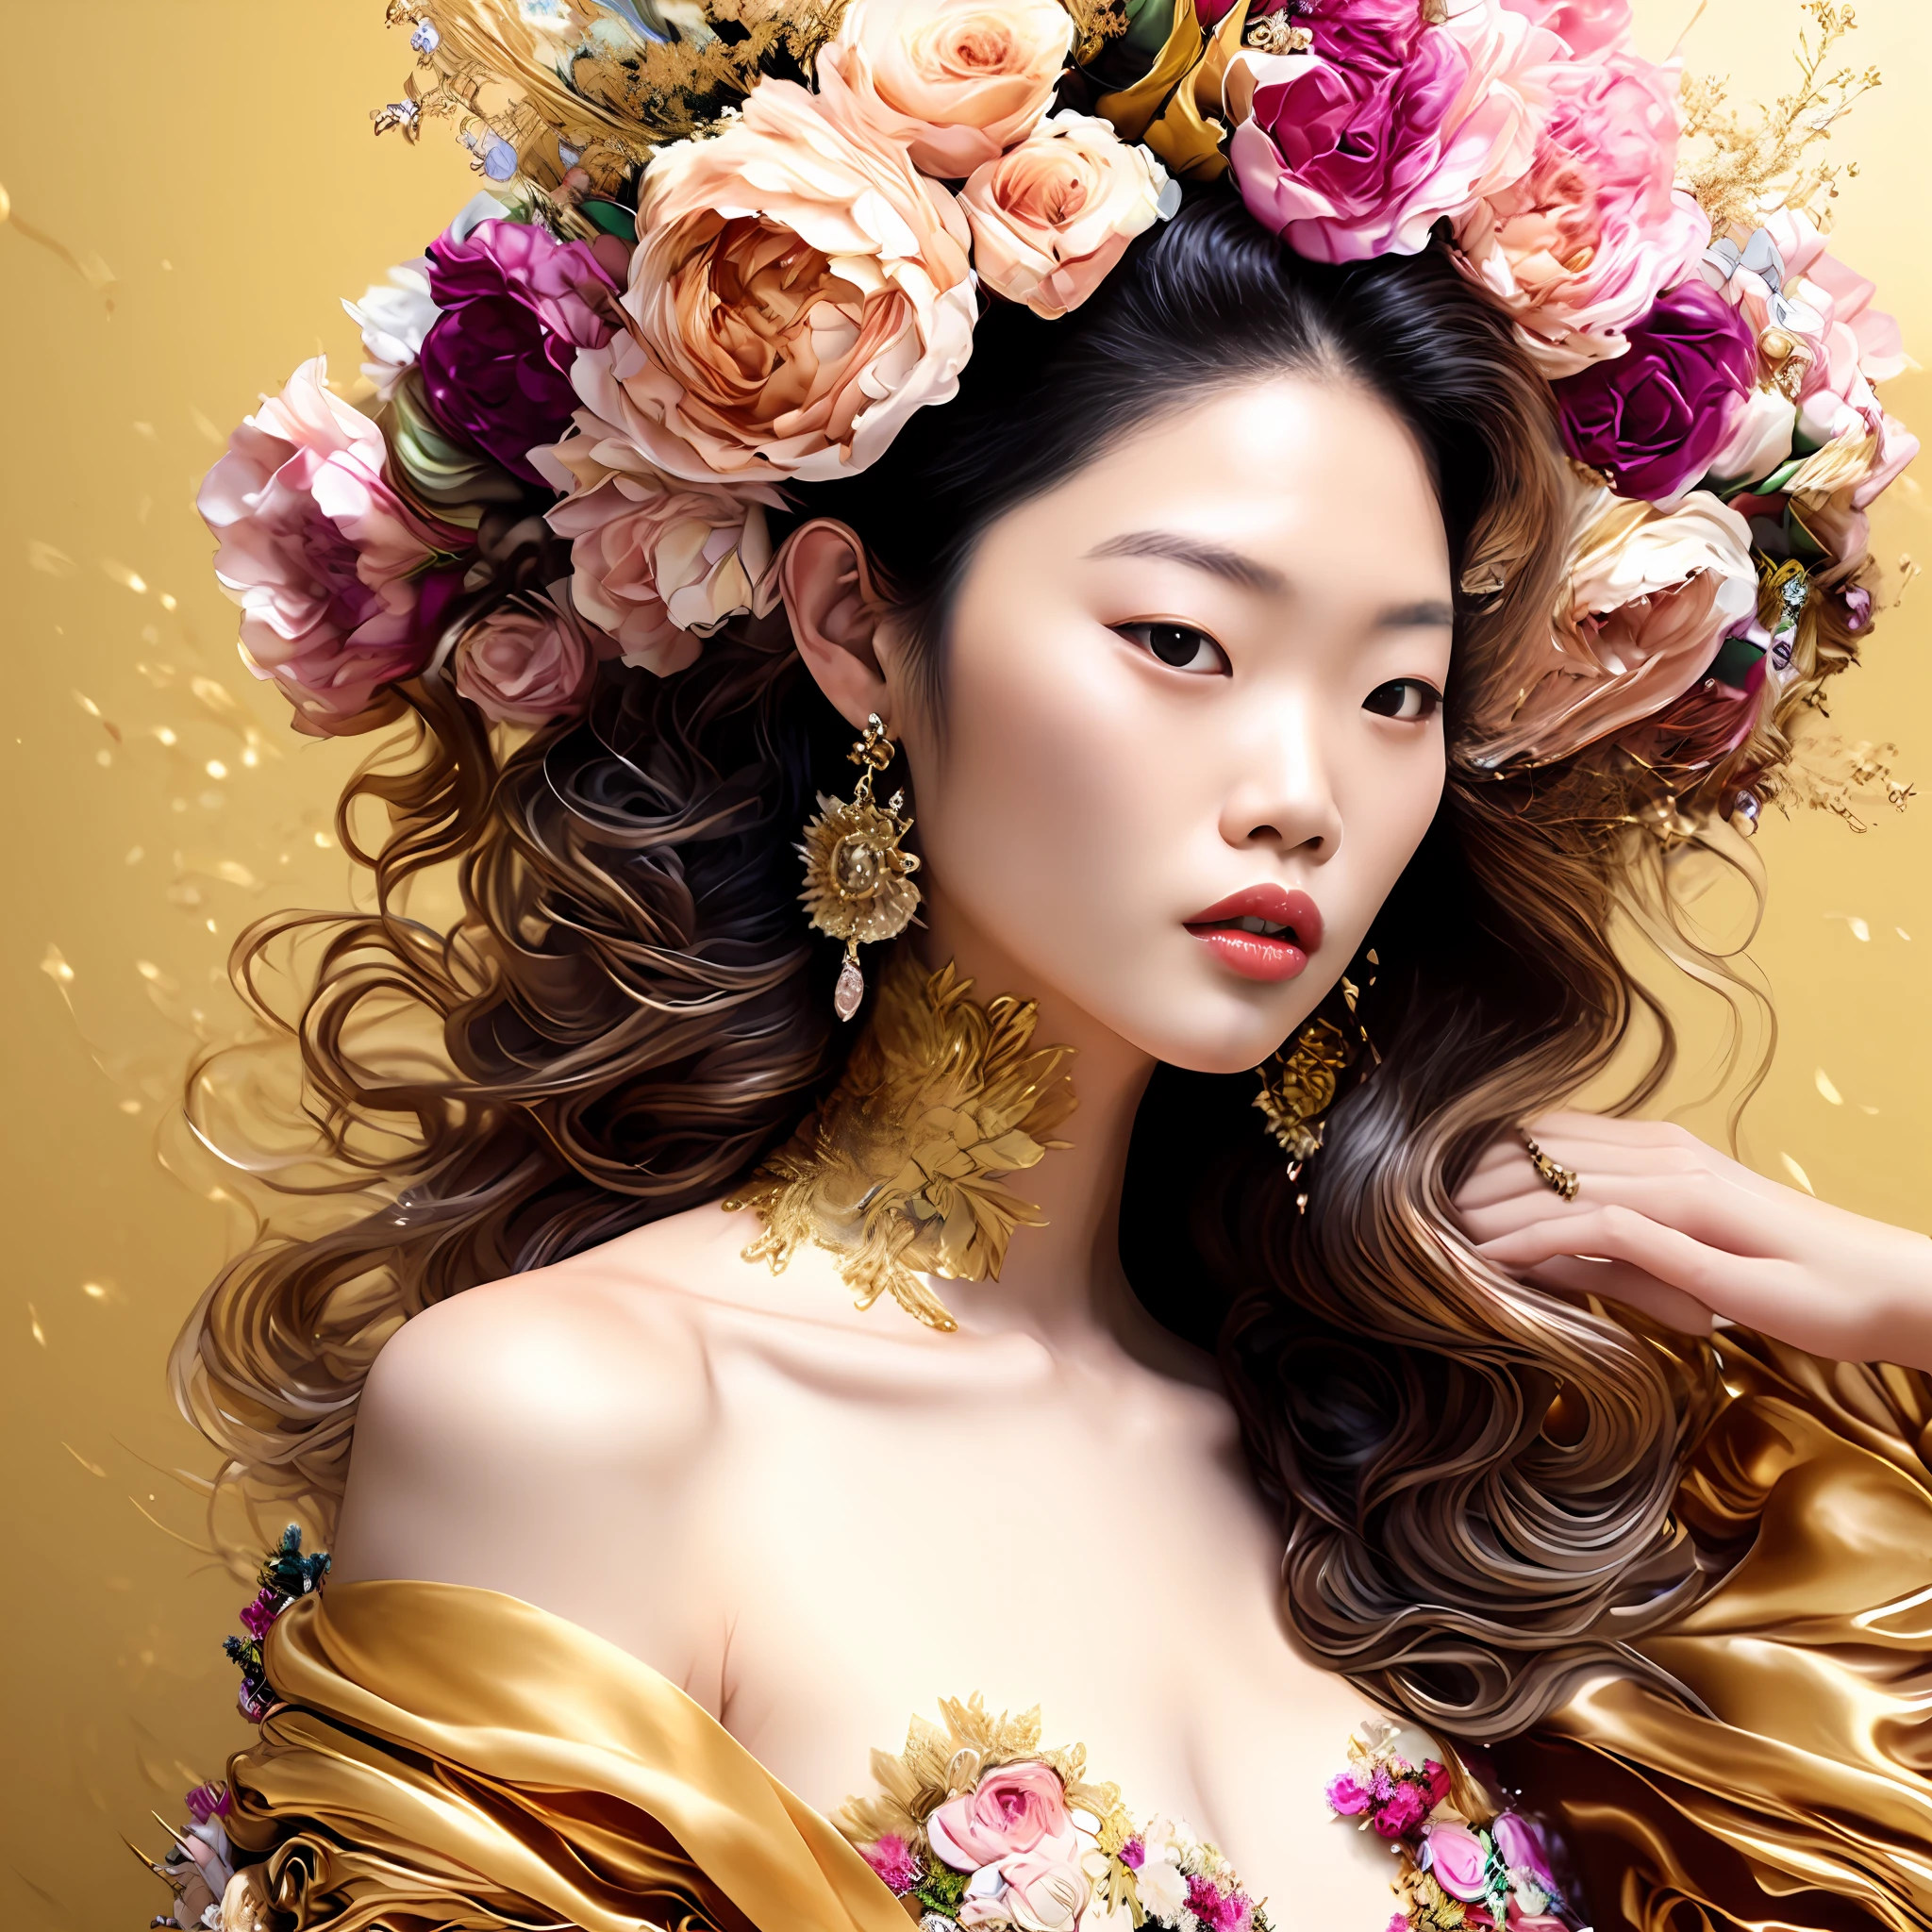 جيني كيم, صورة (نمط كسورية المرأة:1) امرأة في ثوب ذهبي, مع الزهور في شعرك, مع وجود الشمس في الخلفية